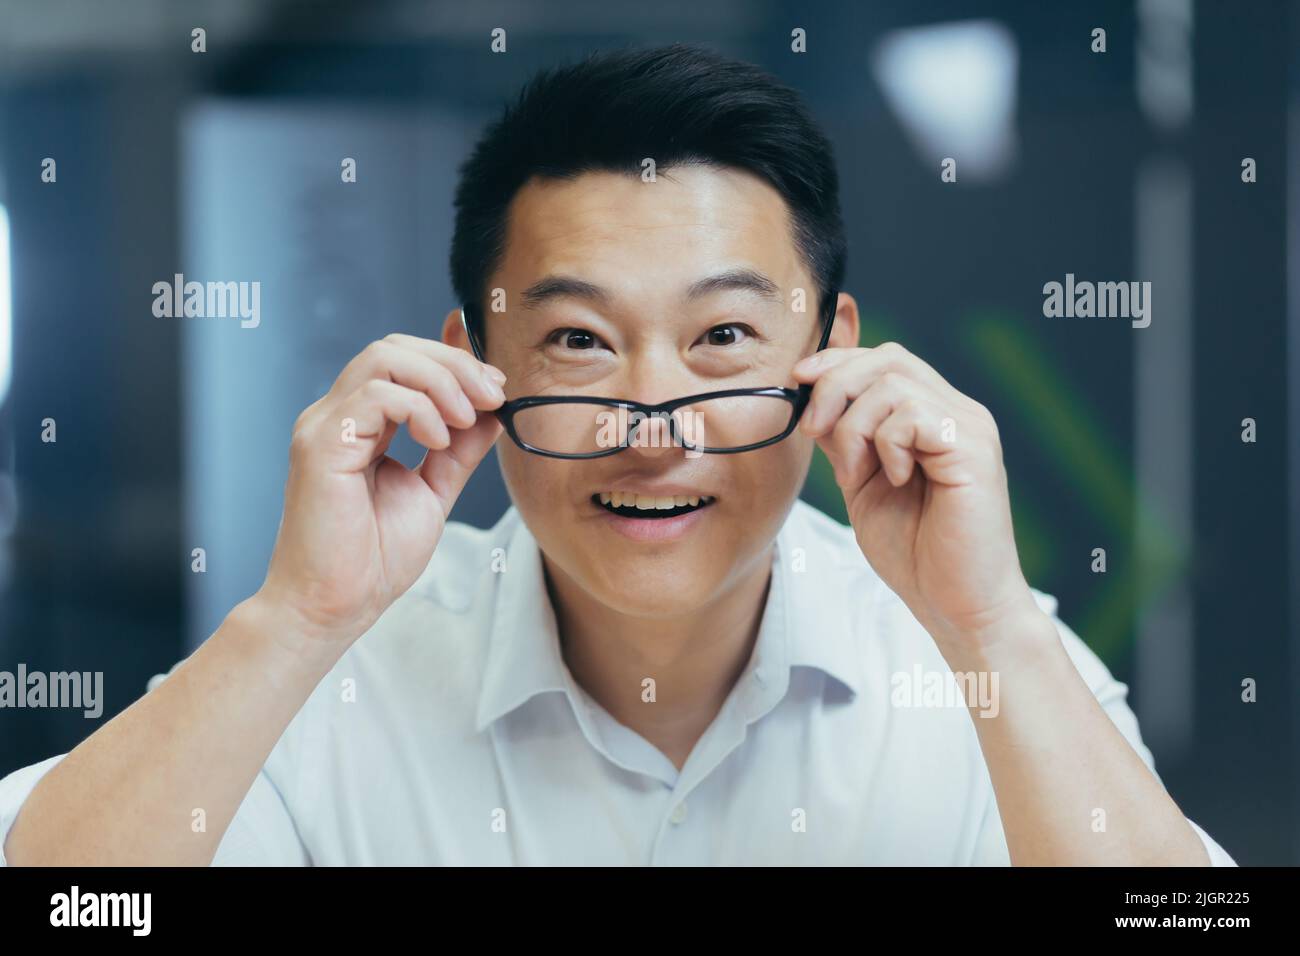 Überrascht asiatische Mann schießt Brille schockiert Blick auf Kamera. Fröhliches Lächeln freut sich. Schauen Sie sich Monitor-Bildschirm Webcam-Ansicht. Erstaunt Nahaufnahme Porträt. Gesicht hübscher Mann Büroangestellter Wow Ausdruck Stockfoto